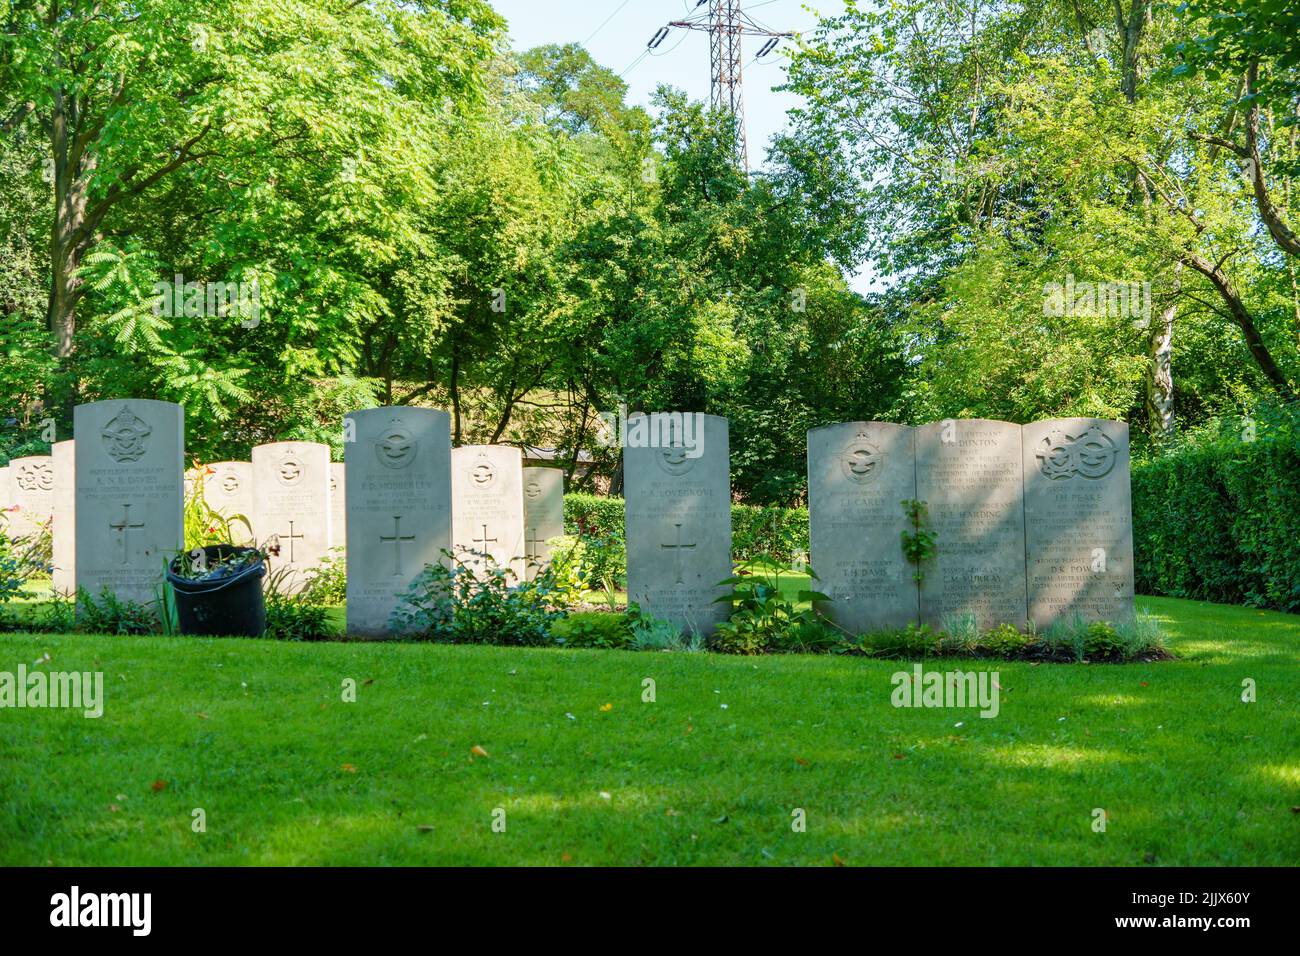 Les tombes des soldats tombés pendant la Seconde Guerre mondiale dans le parc Cytadela, en Pologne Banque D'Images